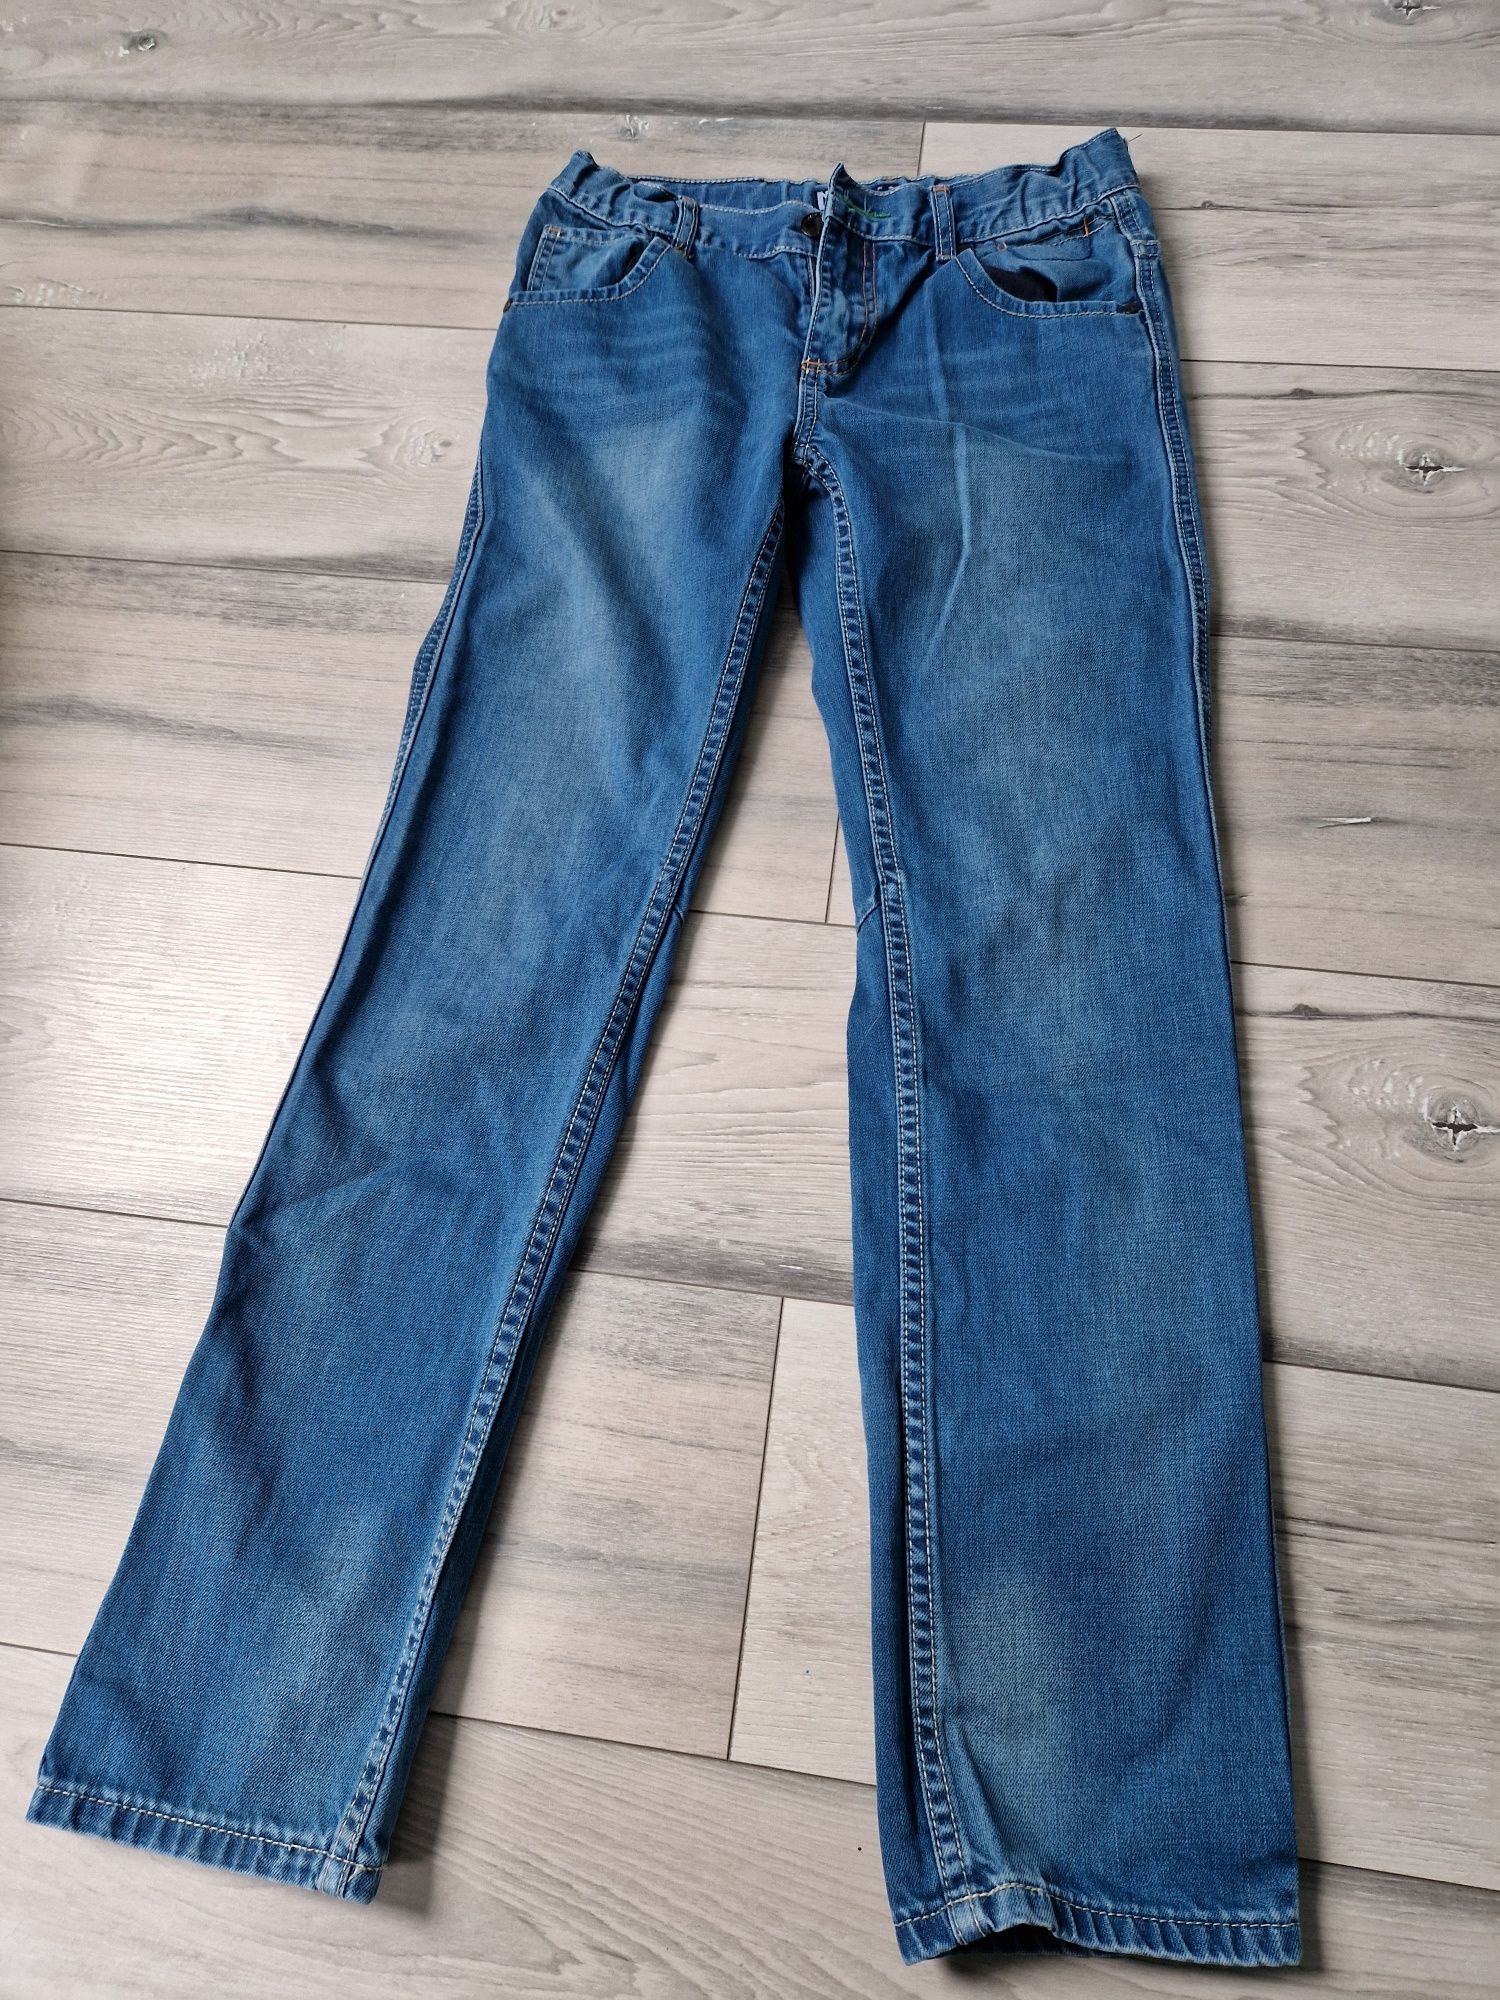 Spodnie jeansowe 158 dla chłopca